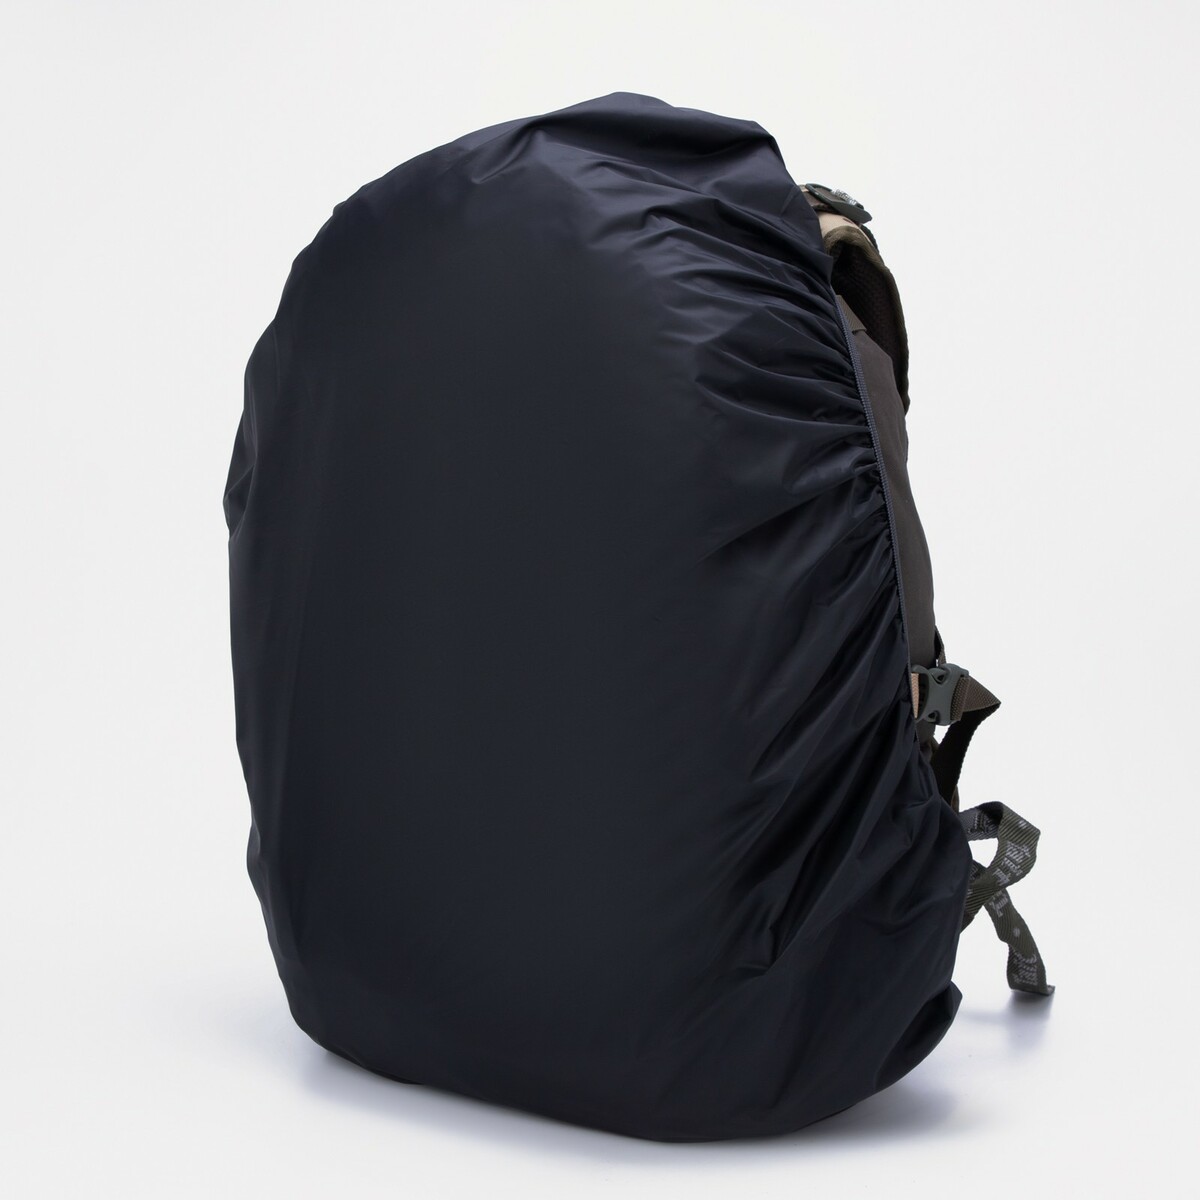 Чехол на рюкзак 60 л, цвет черный чехол влагостойкий на рюкзак 10 30 литров оксфорд 210